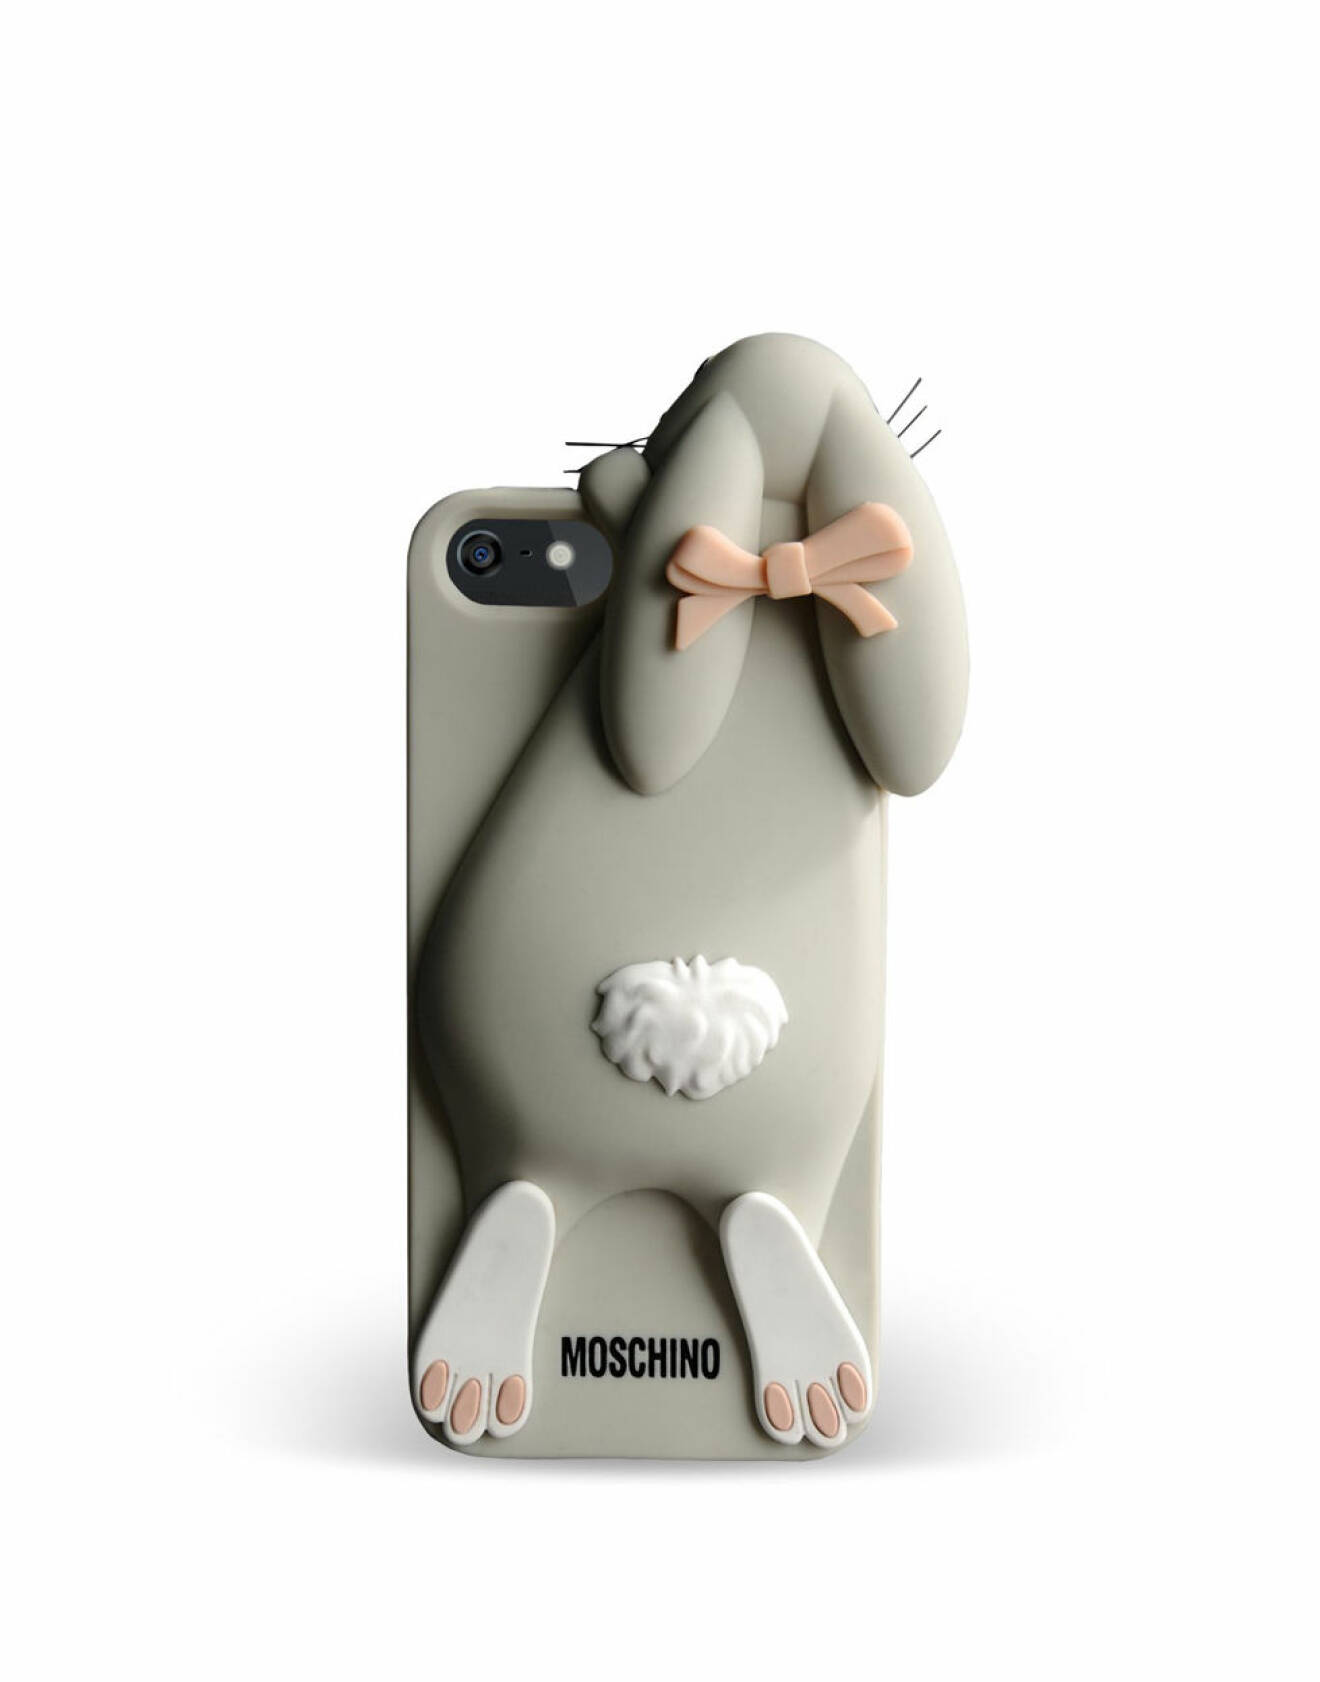 Gulligt mobilskal med kanin från Moschino.